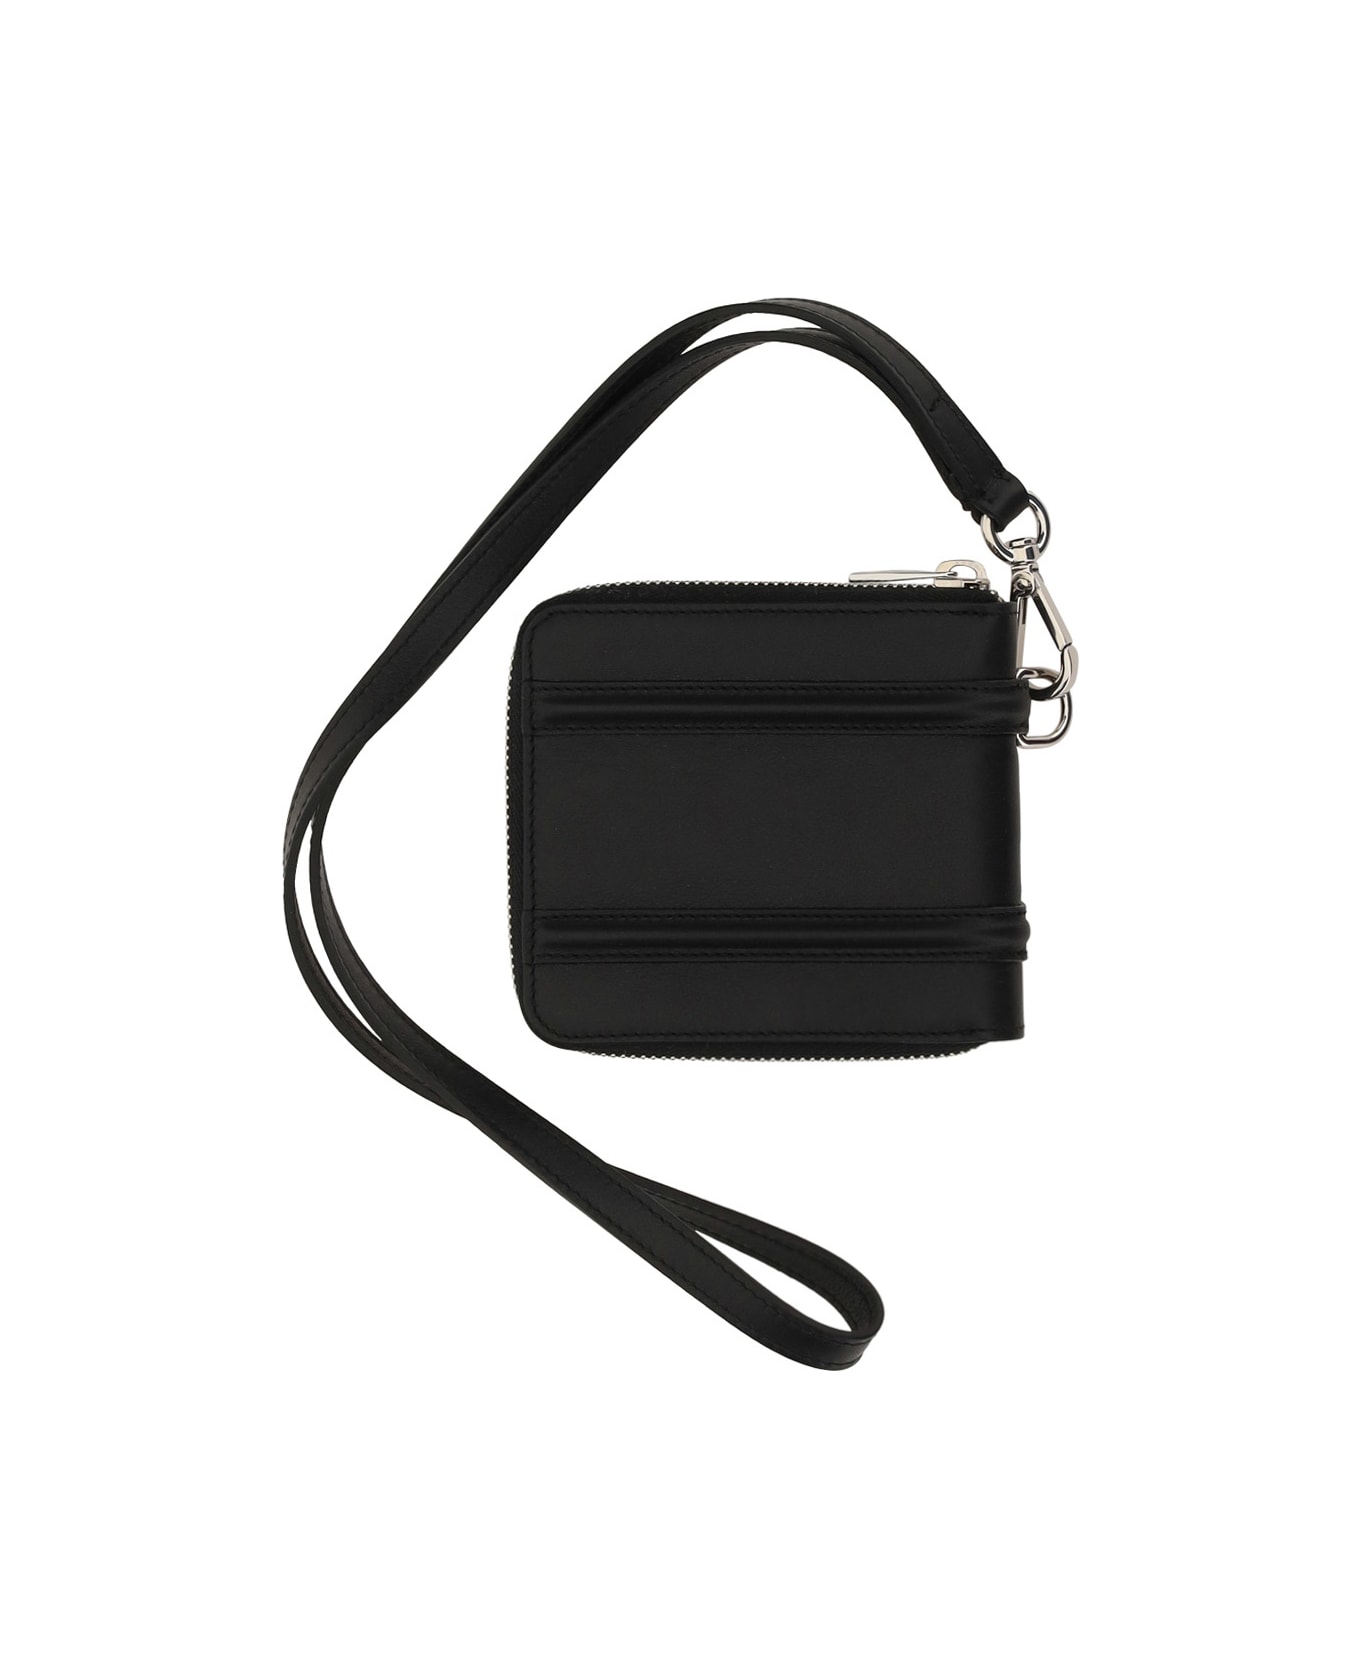 Alexander McQueen Harness Wallet - Black 財布